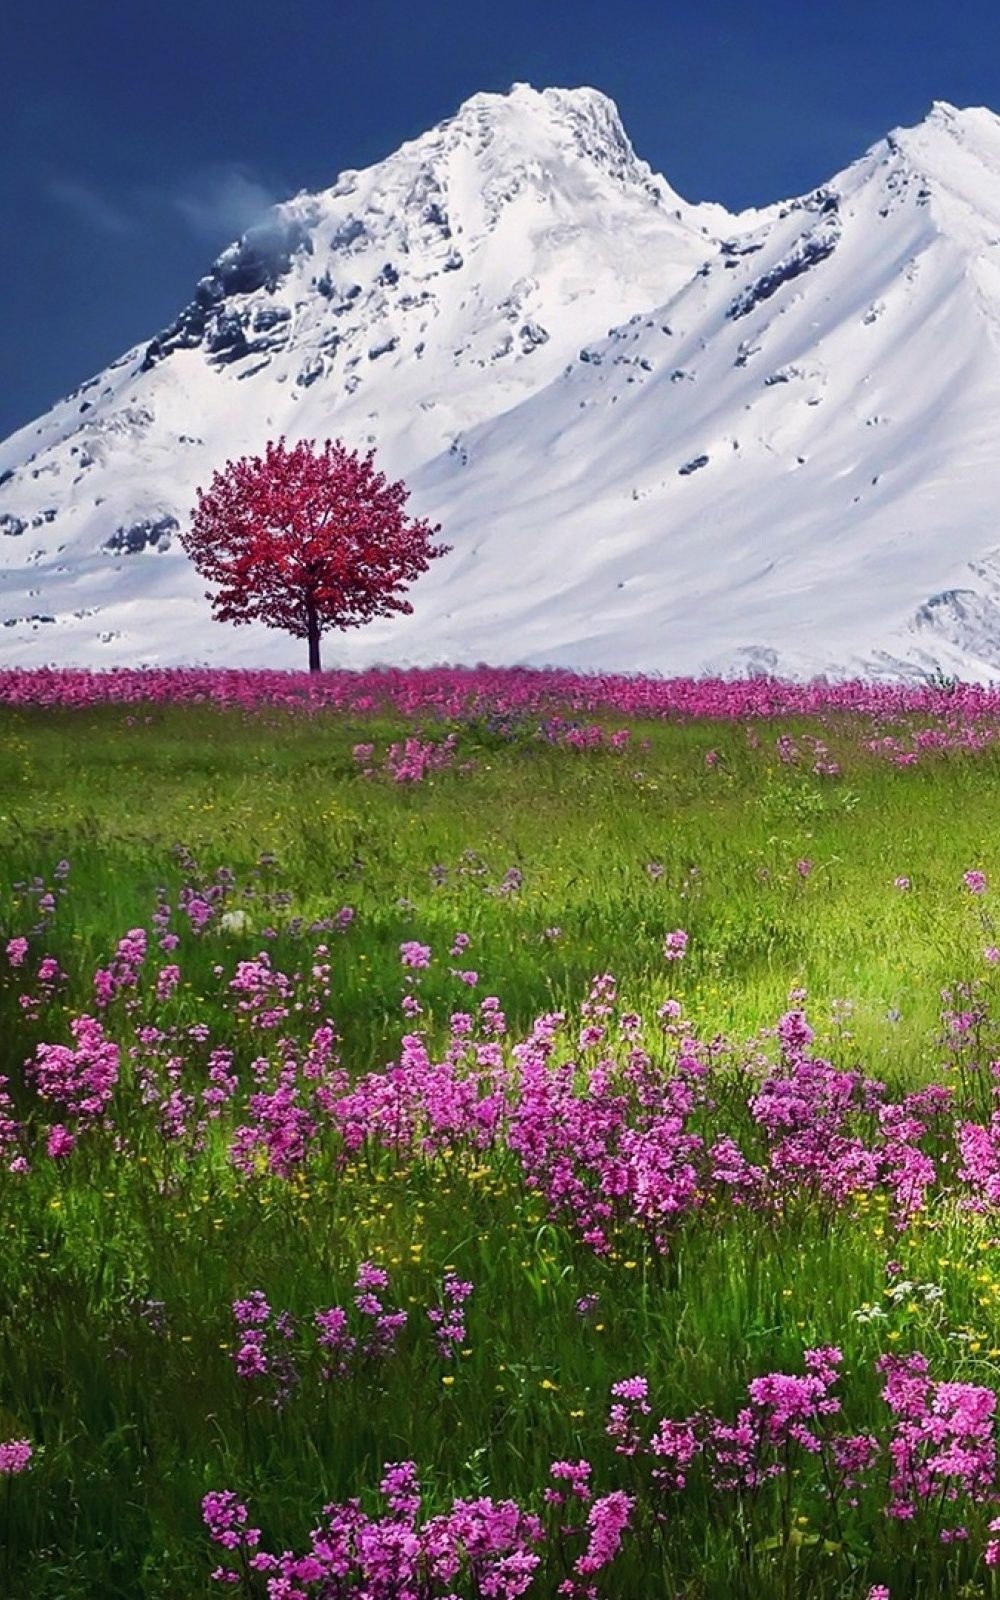 پوستر شگفت انگیز HD از طبیعت بهاری سوئیس آماده چاپ